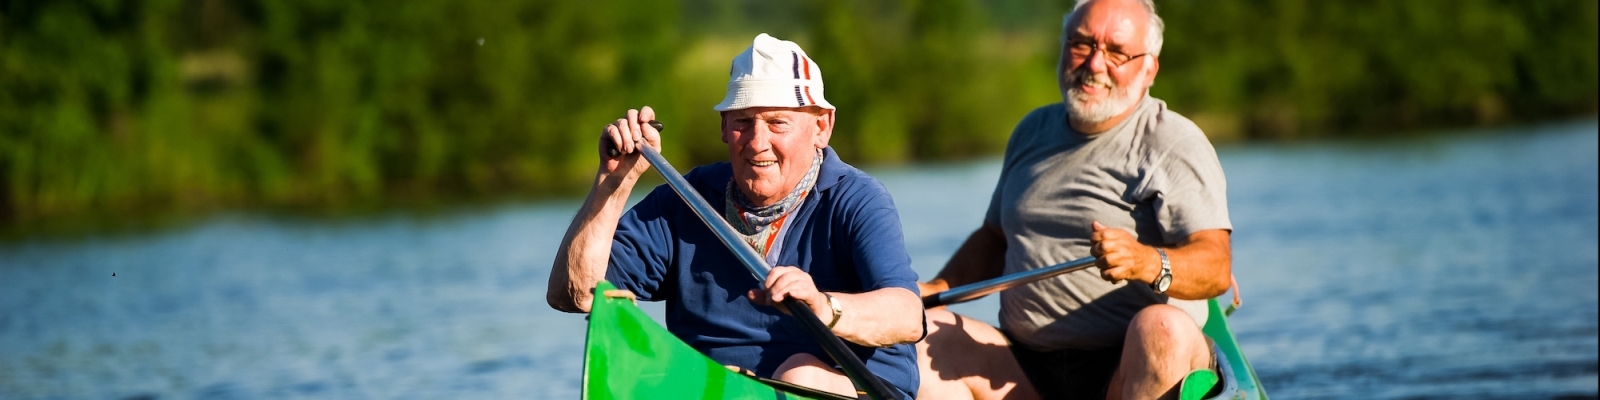 Zwei Senioren geimsam in einem grünen Kanu auf dem Wasser.